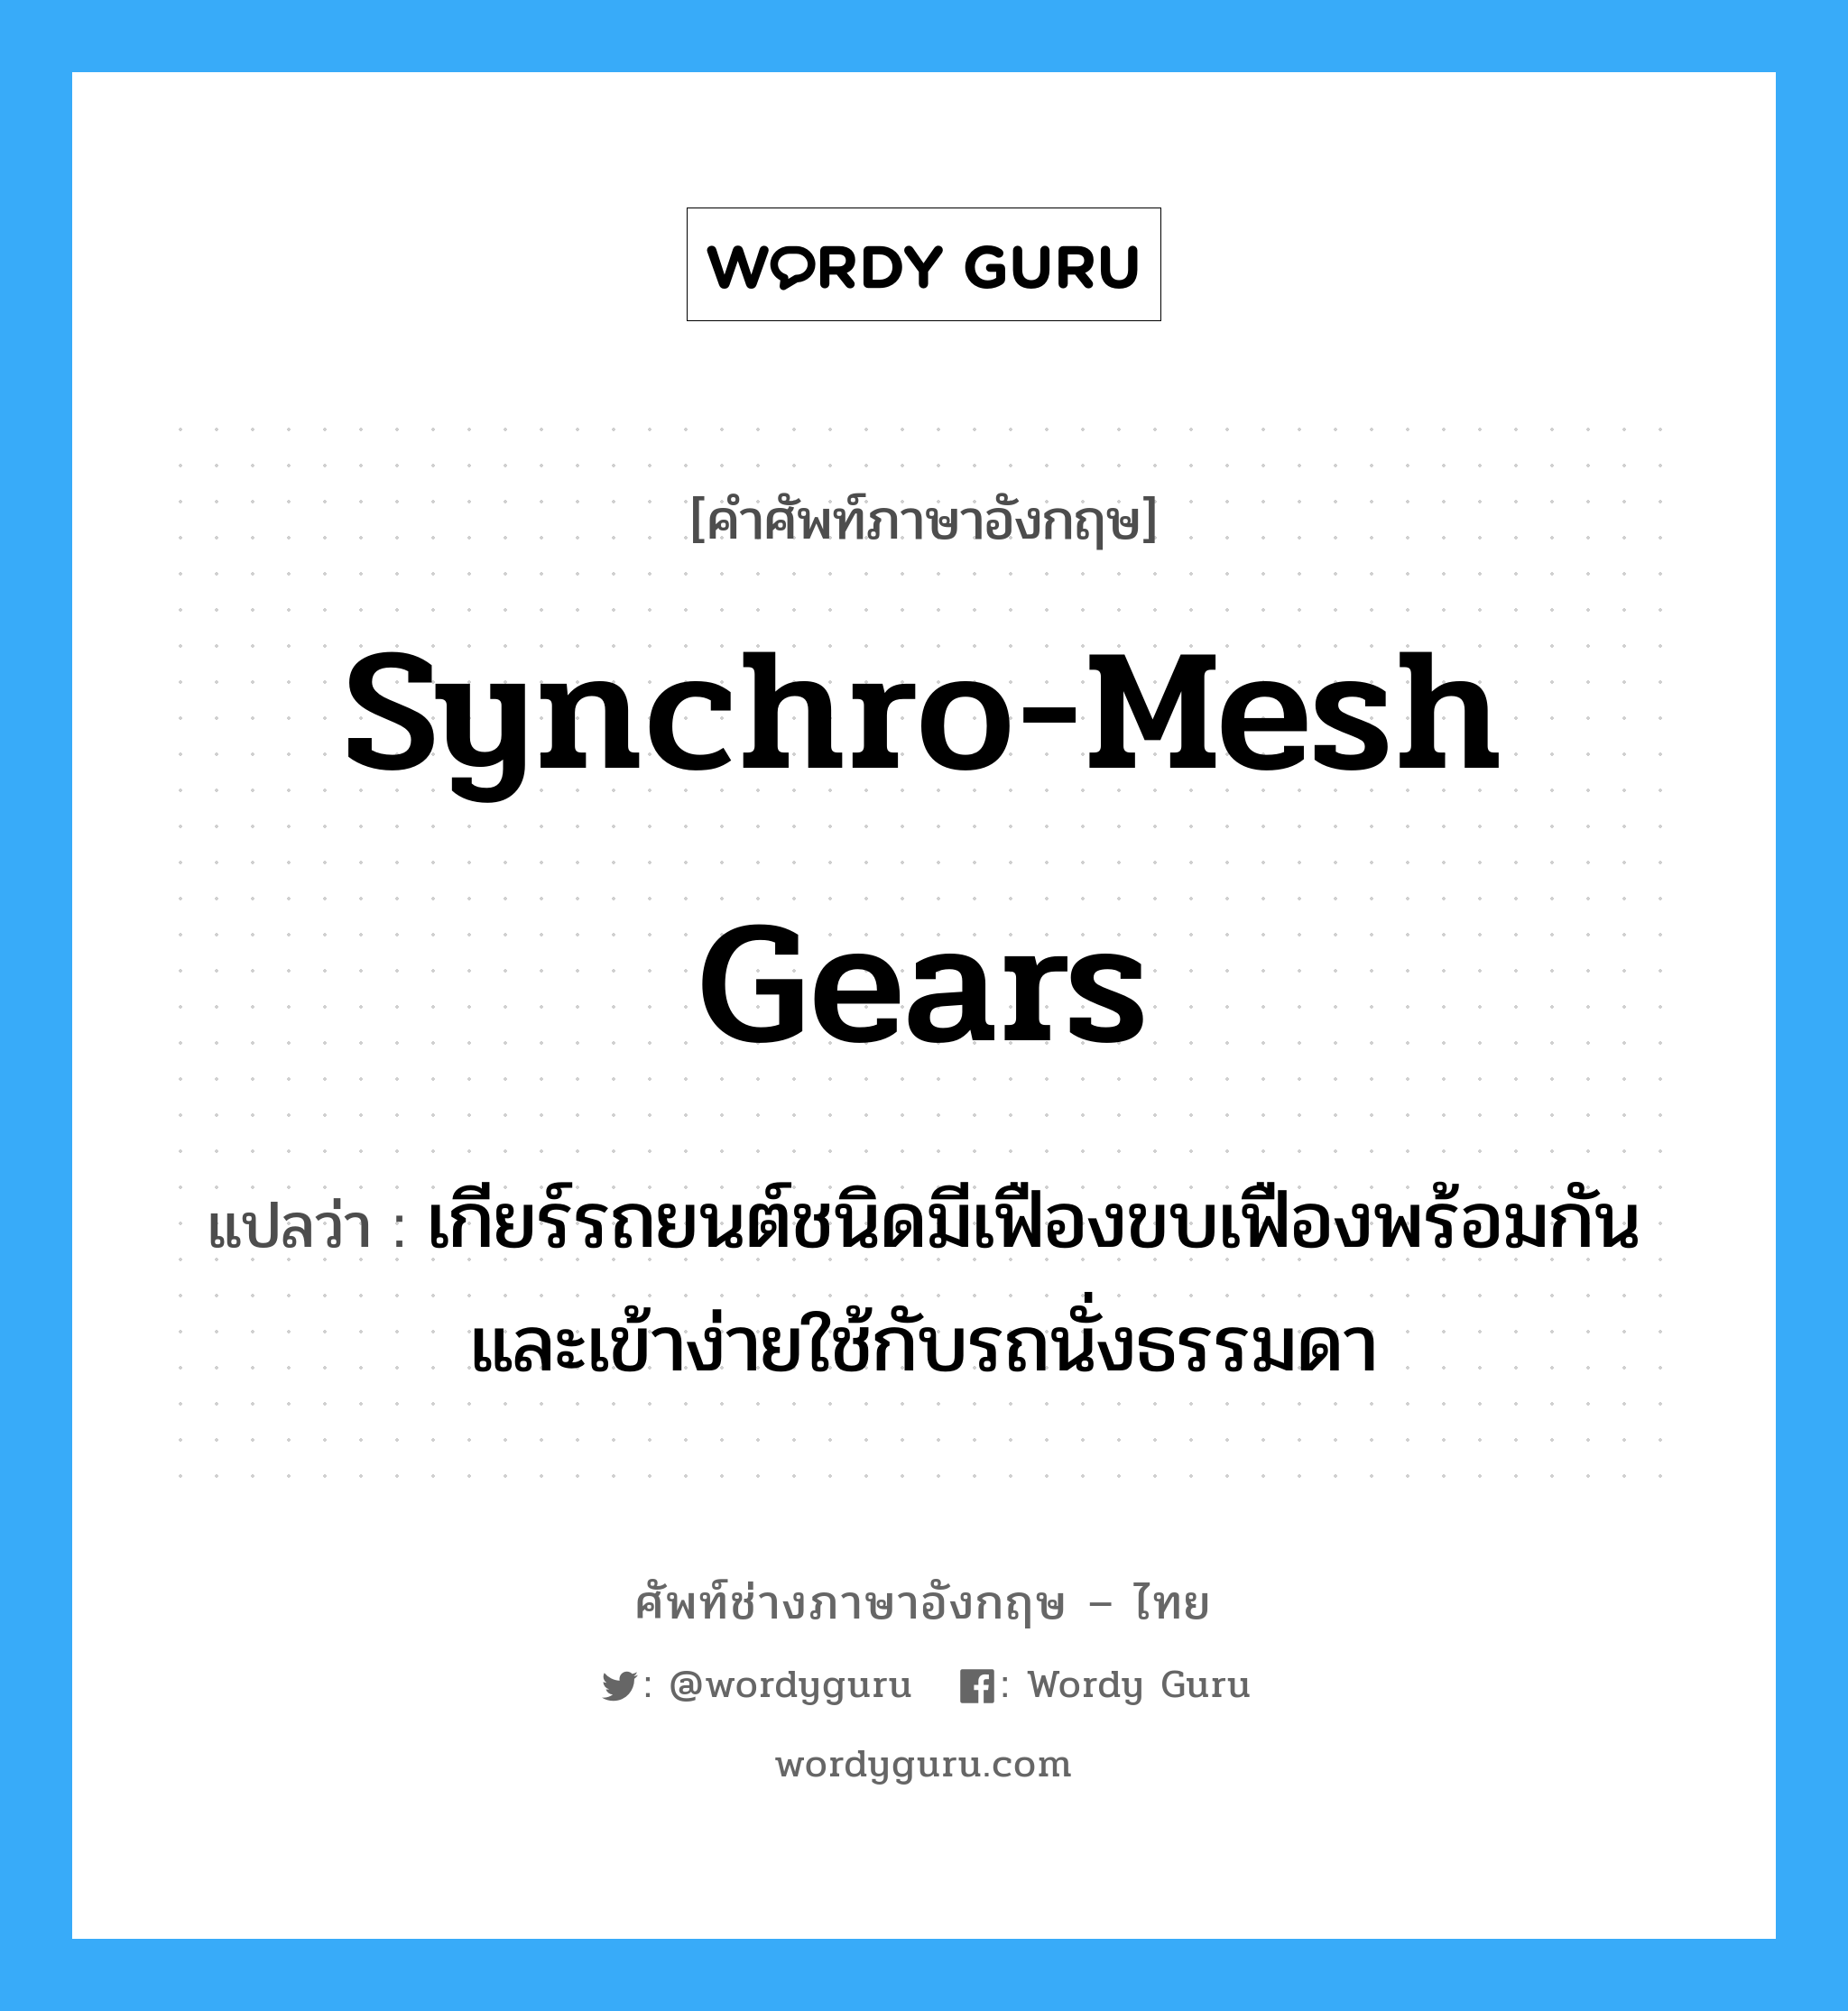 synchro-mesh gears แปลว่า?, คำศัพท์ช่างภาษาอังกฤษ - ไทย synchro-mesh gears คำศัพท์ภาษาอังกฤษ synchro-mesh gears แปลว่า เกียร์รถยนต์ชนิดมีเฟืองขบเฟืองพร้อมกัน และเข้าง่ายใช้กับรถนั่งธรรมดา